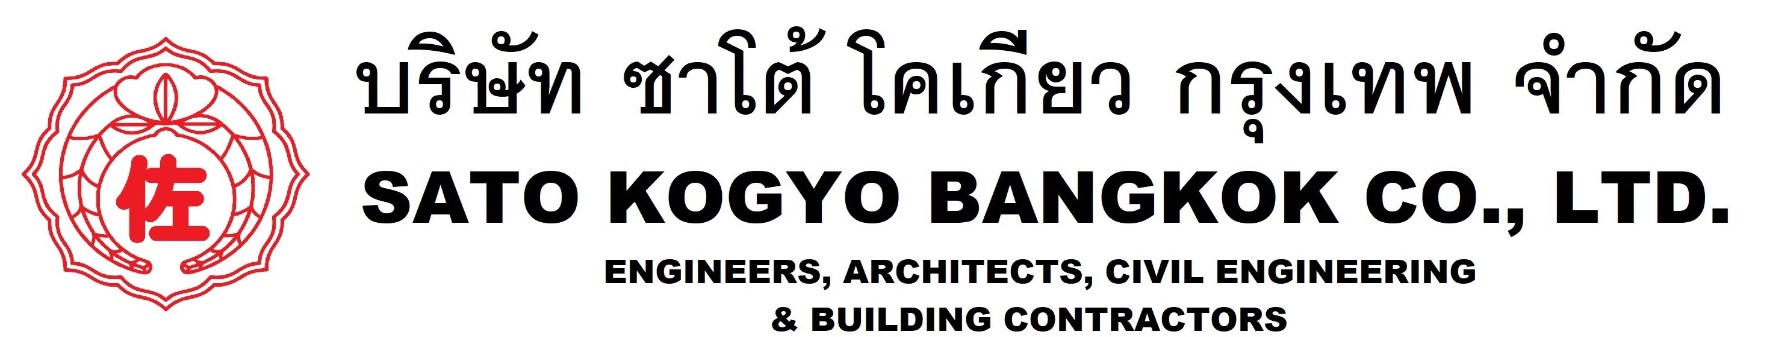 Sato Kogyo Bangkok Co.,Ltd.